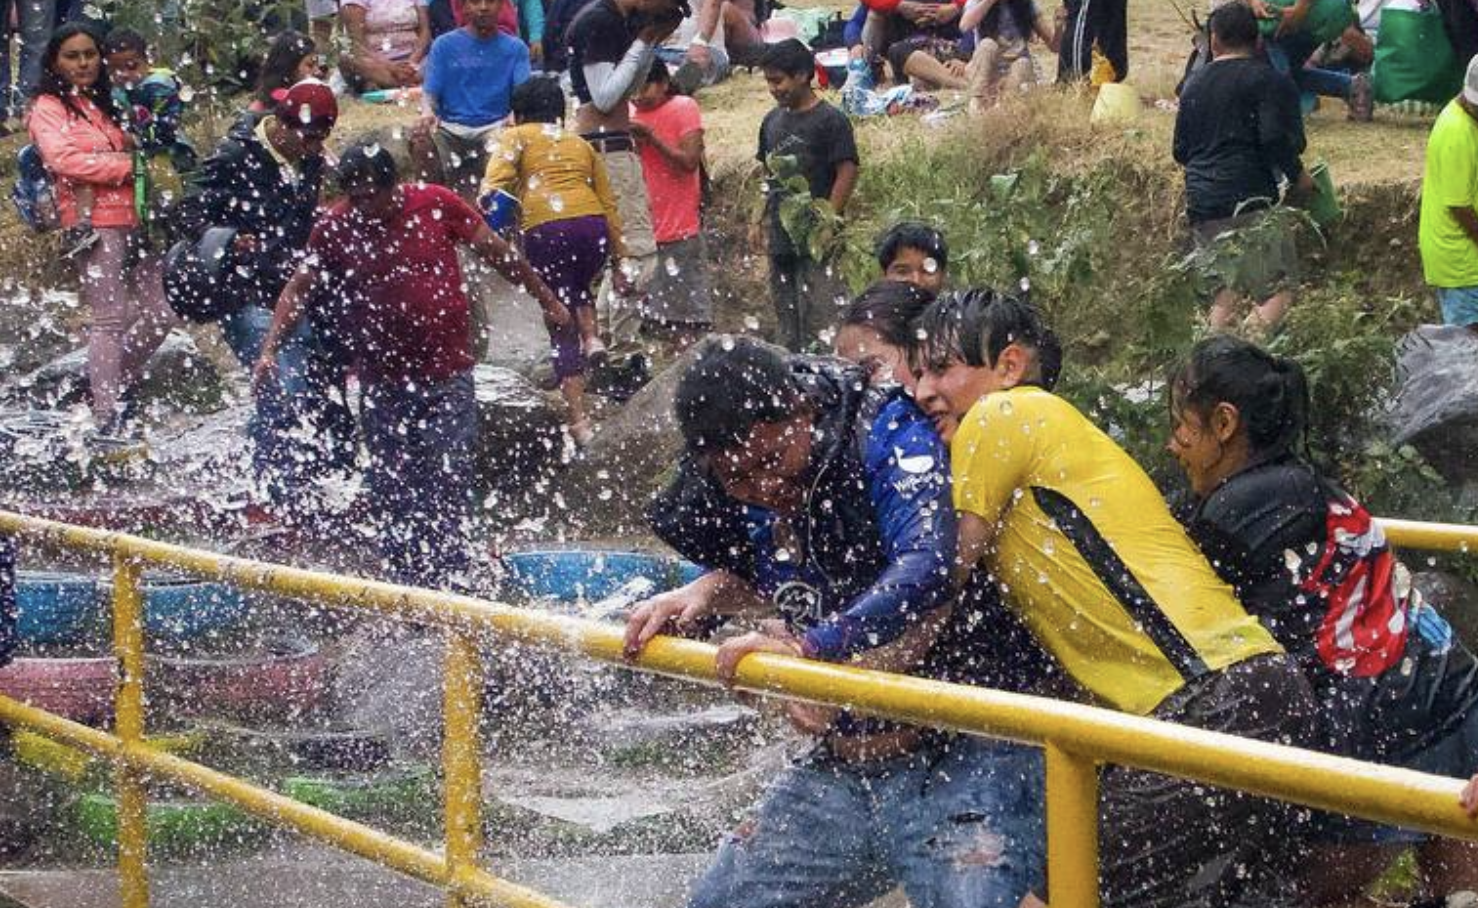 Ciudad de México – ¡No tires agua en Sábado de Gloria! Estas son las multas por desperdiciarla en CDMX y Edomex (El Financiero)